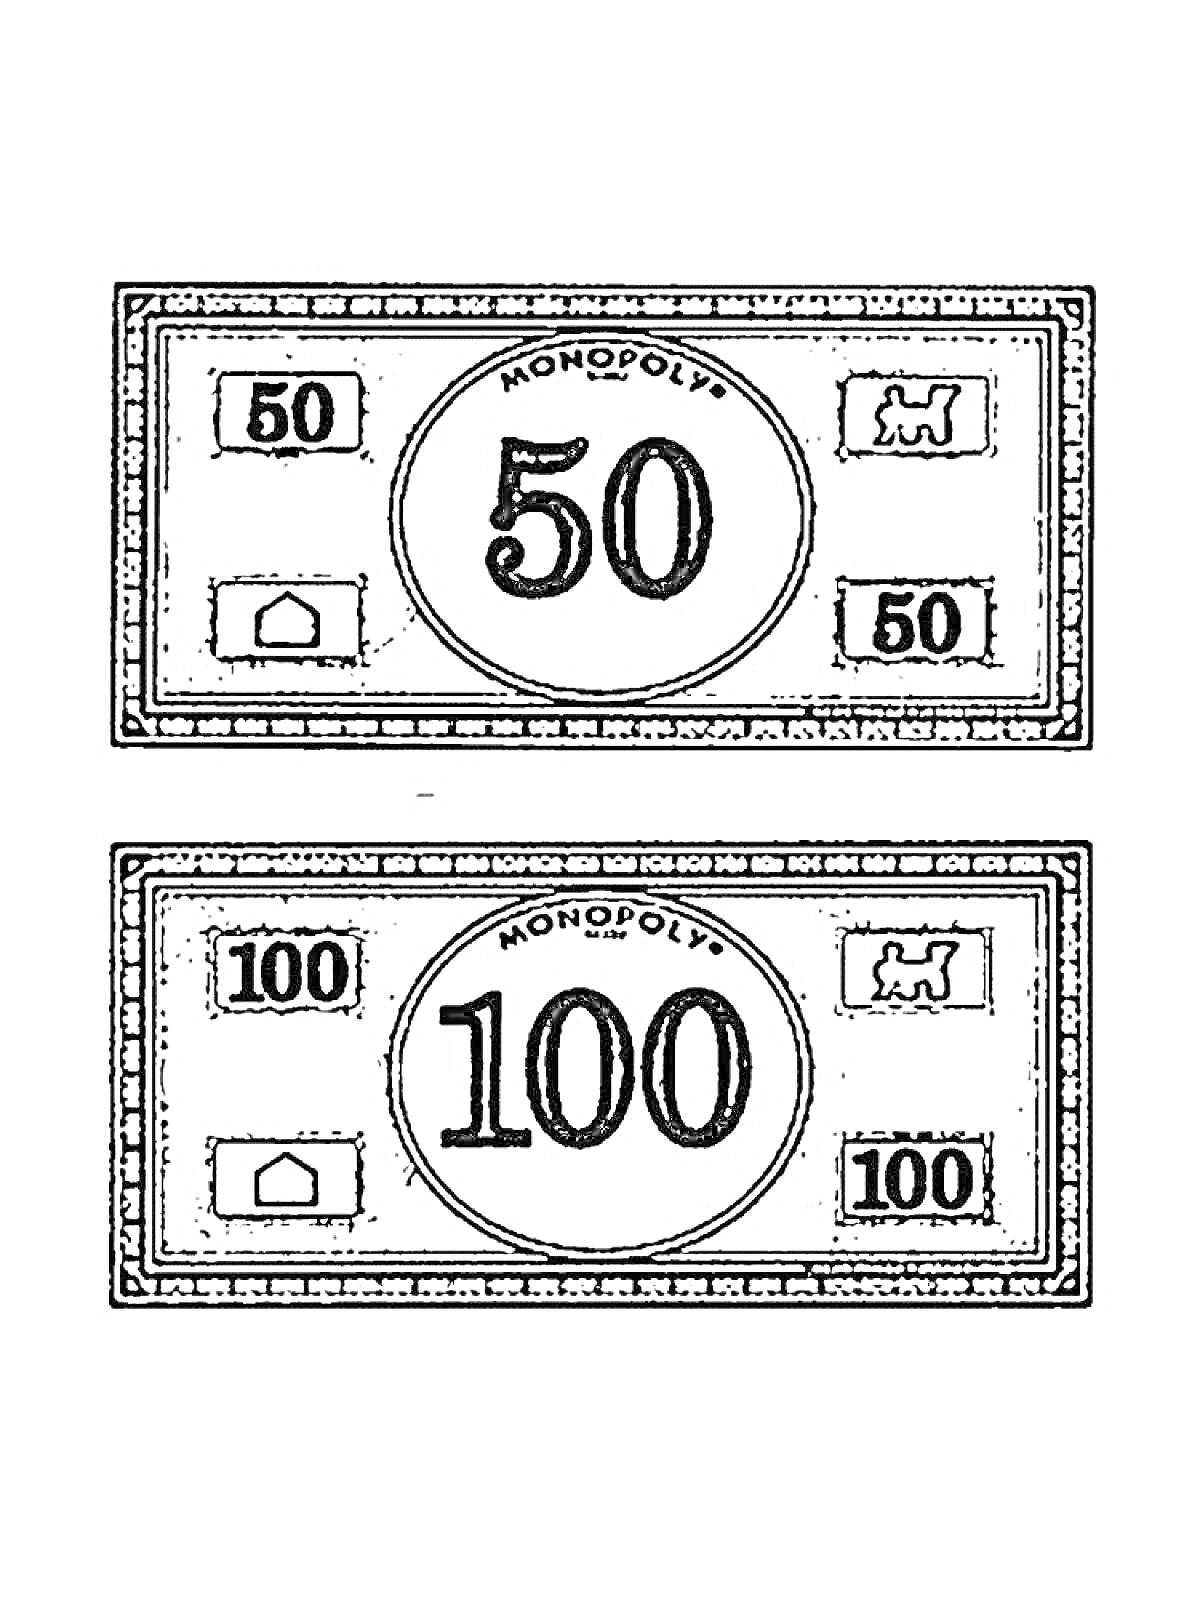 Банкноты Монополии с номиналами 50 и 100, изображены символы домика и машинки